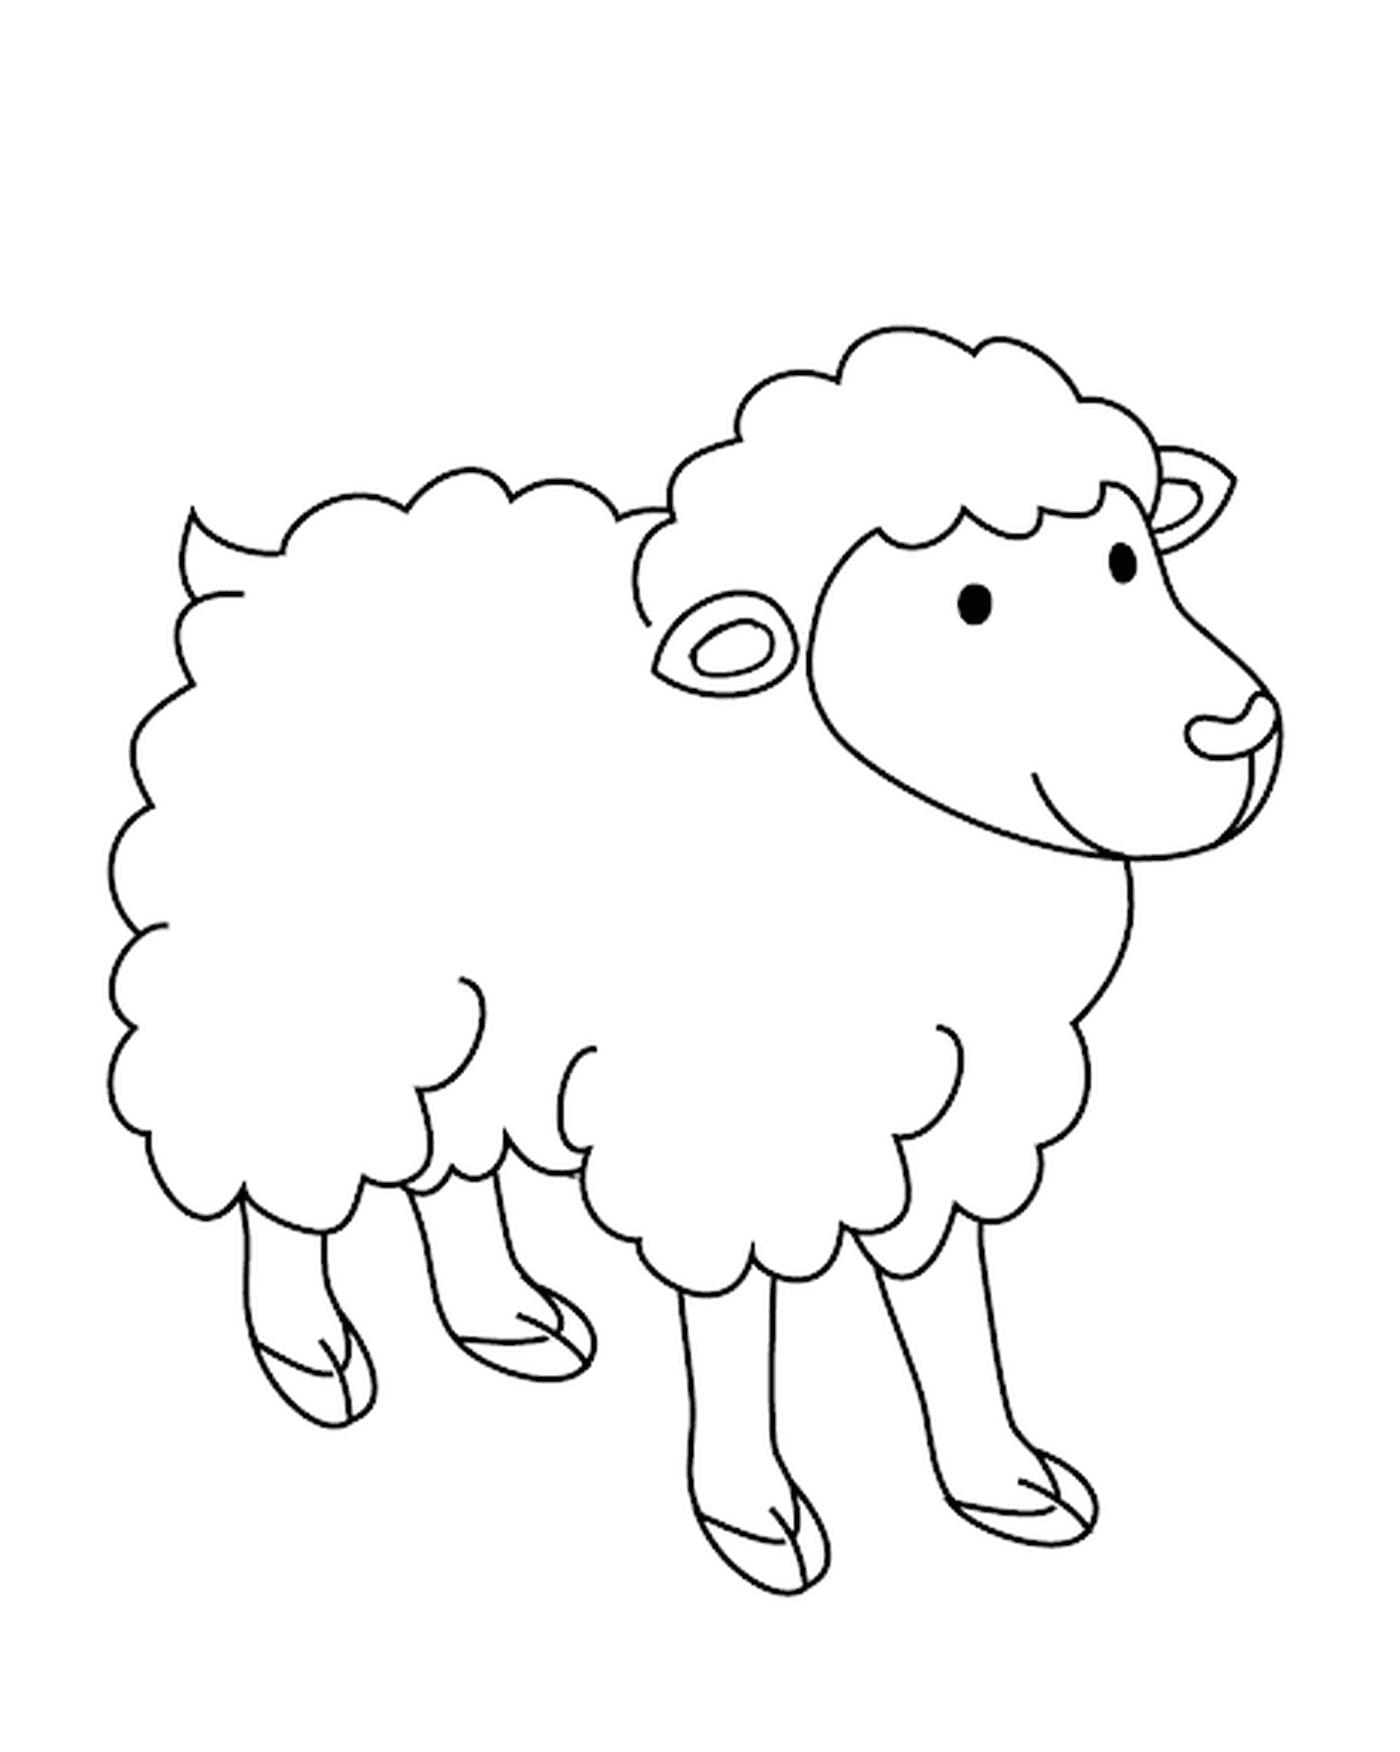  Pecore con lana lunga 